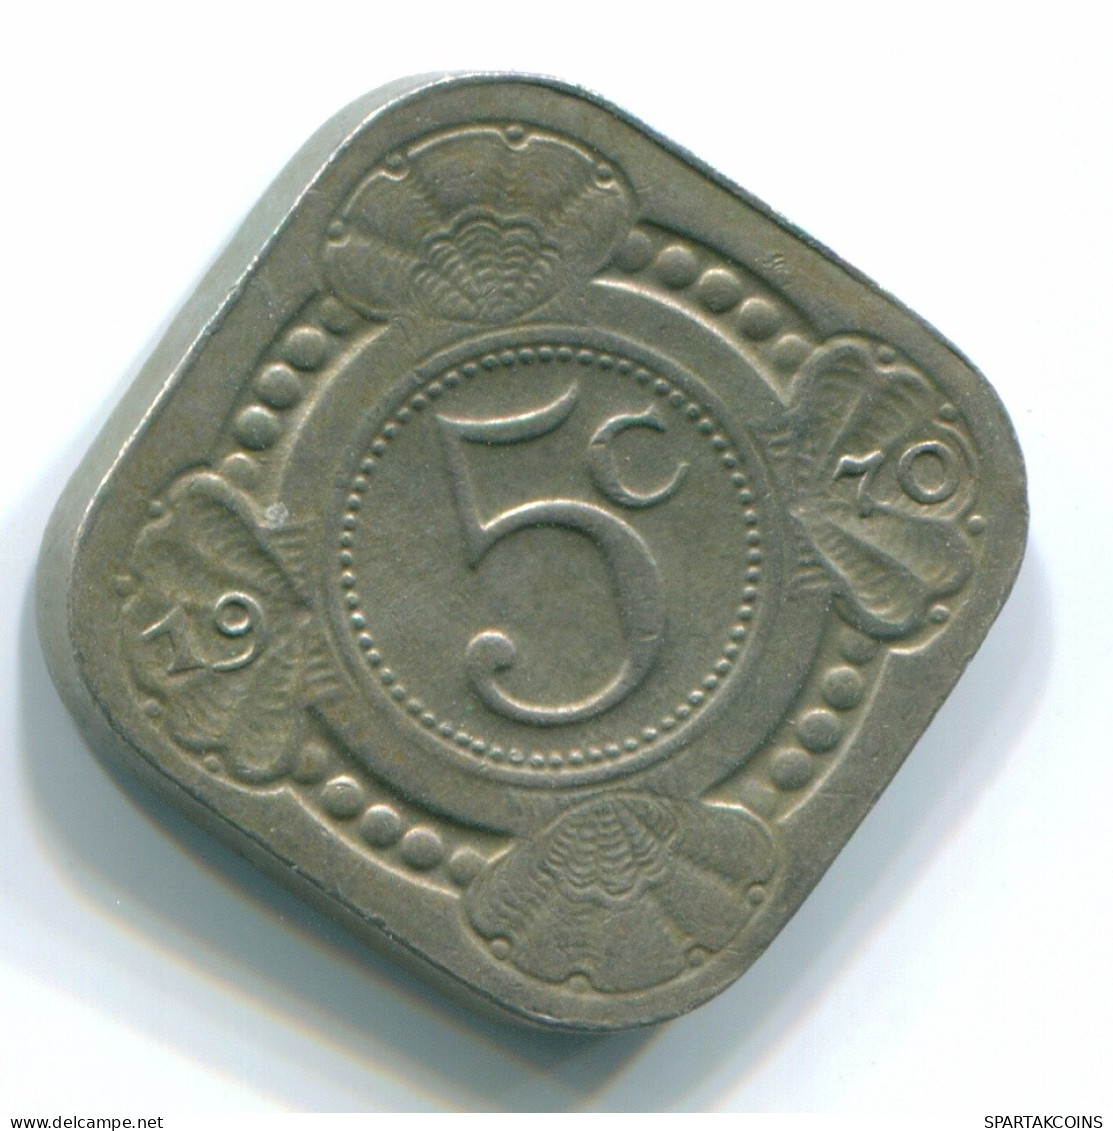 5 CENTS 1970 NIEDERLÄNDISCHE ANTILLEN Nickel Koloniale Münze #S12490.D.A - Antilles Néerlandaises